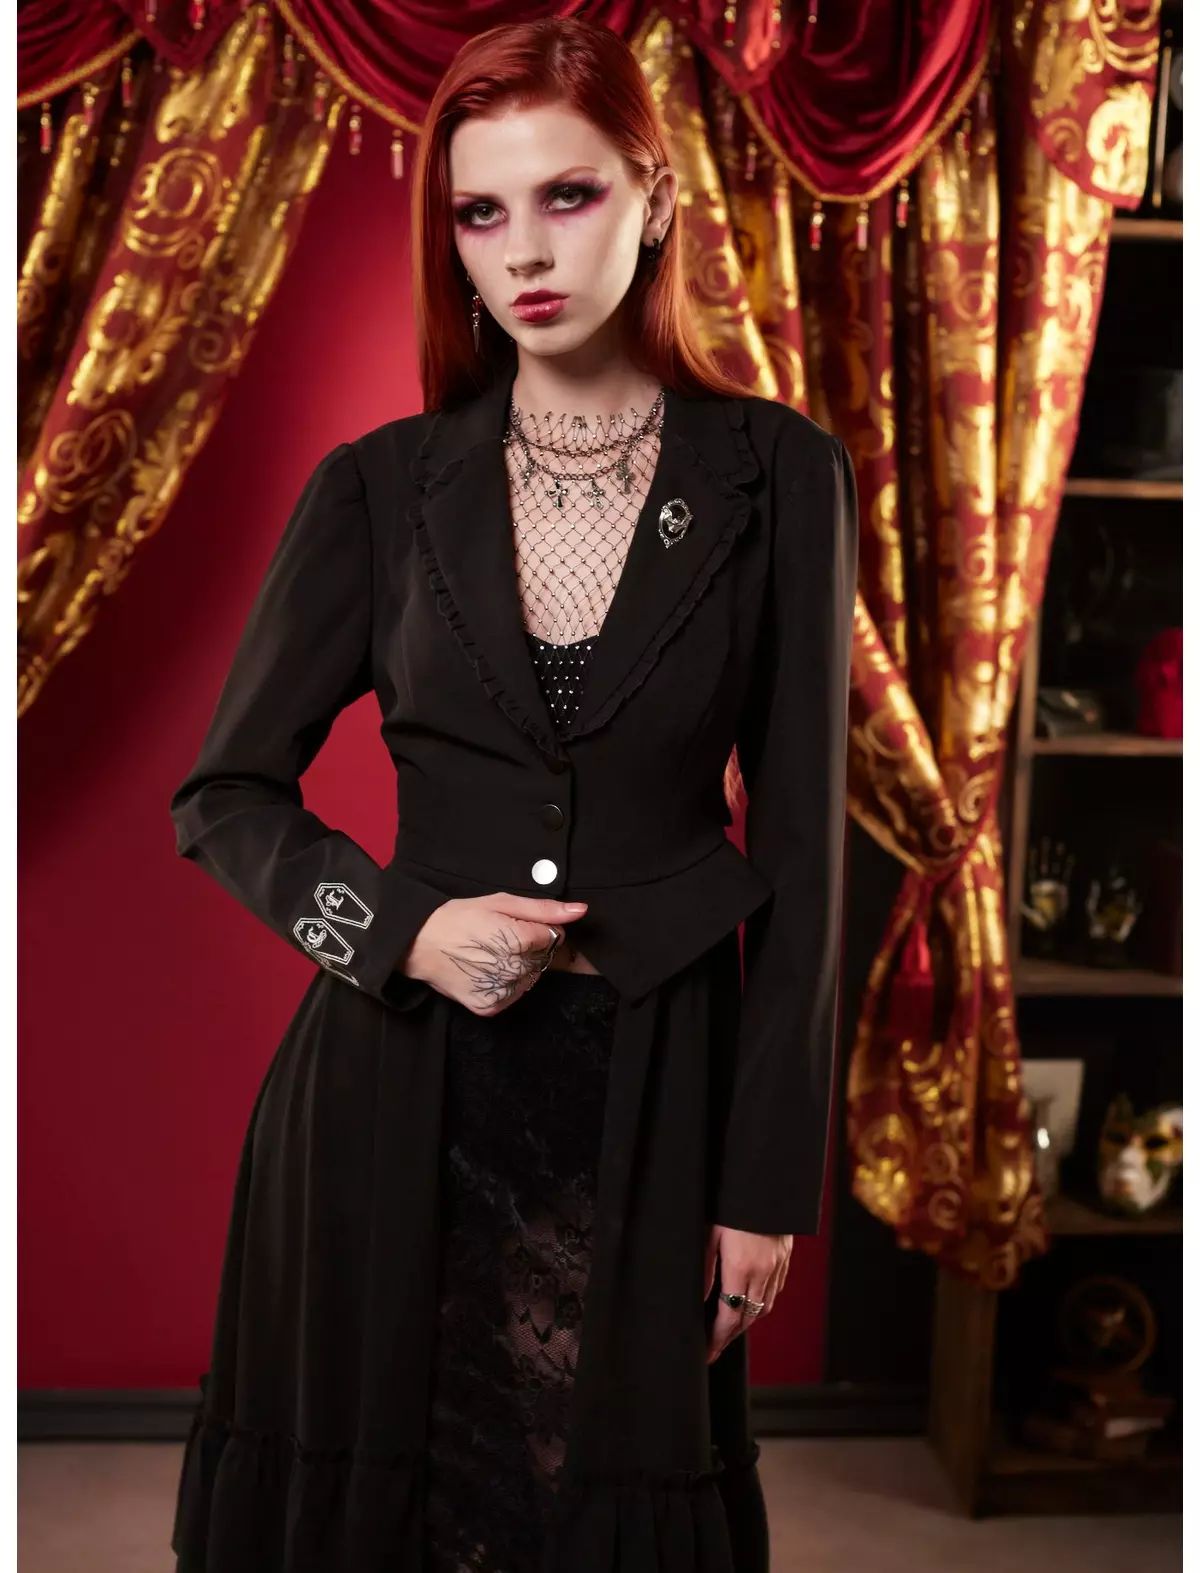 Interview With The Vampire Coffins Girls Peplum Waistcoat | Hot Topic | Hot Topic